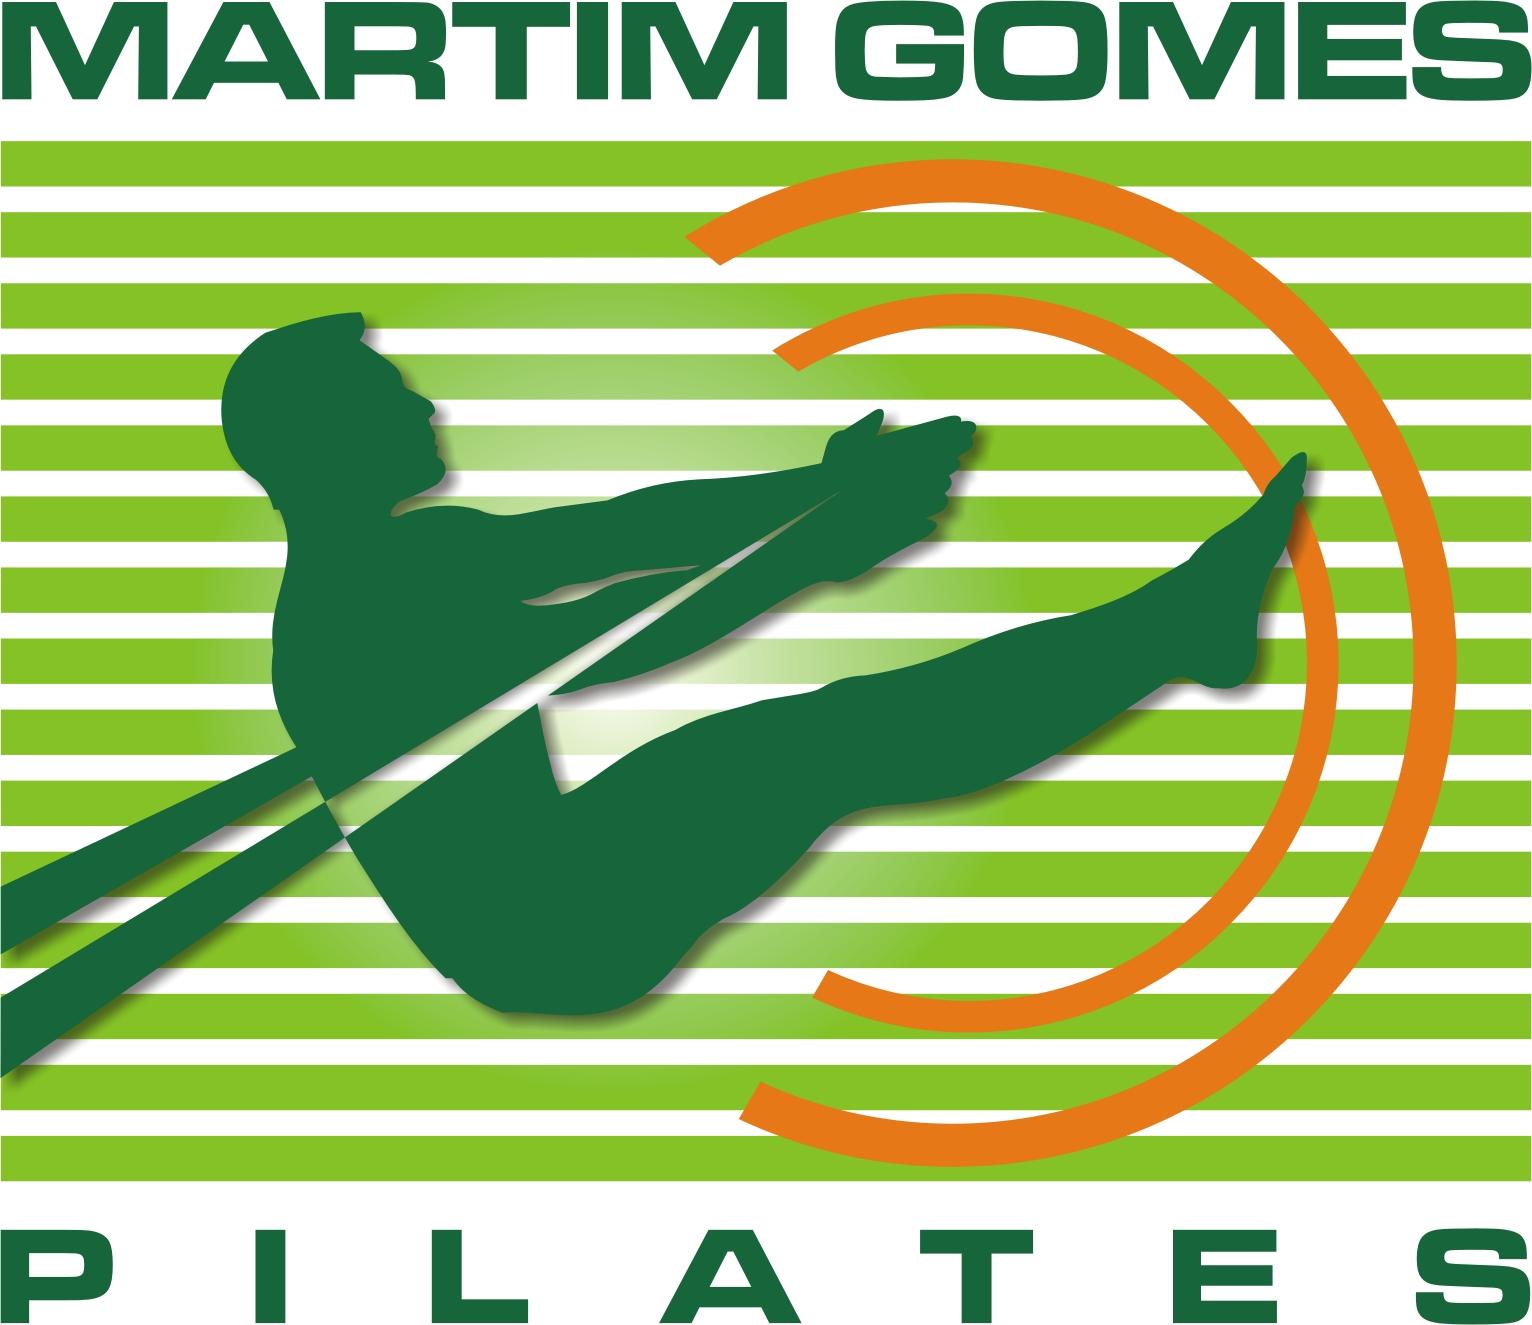 MARTIM GOMES PILATES logo